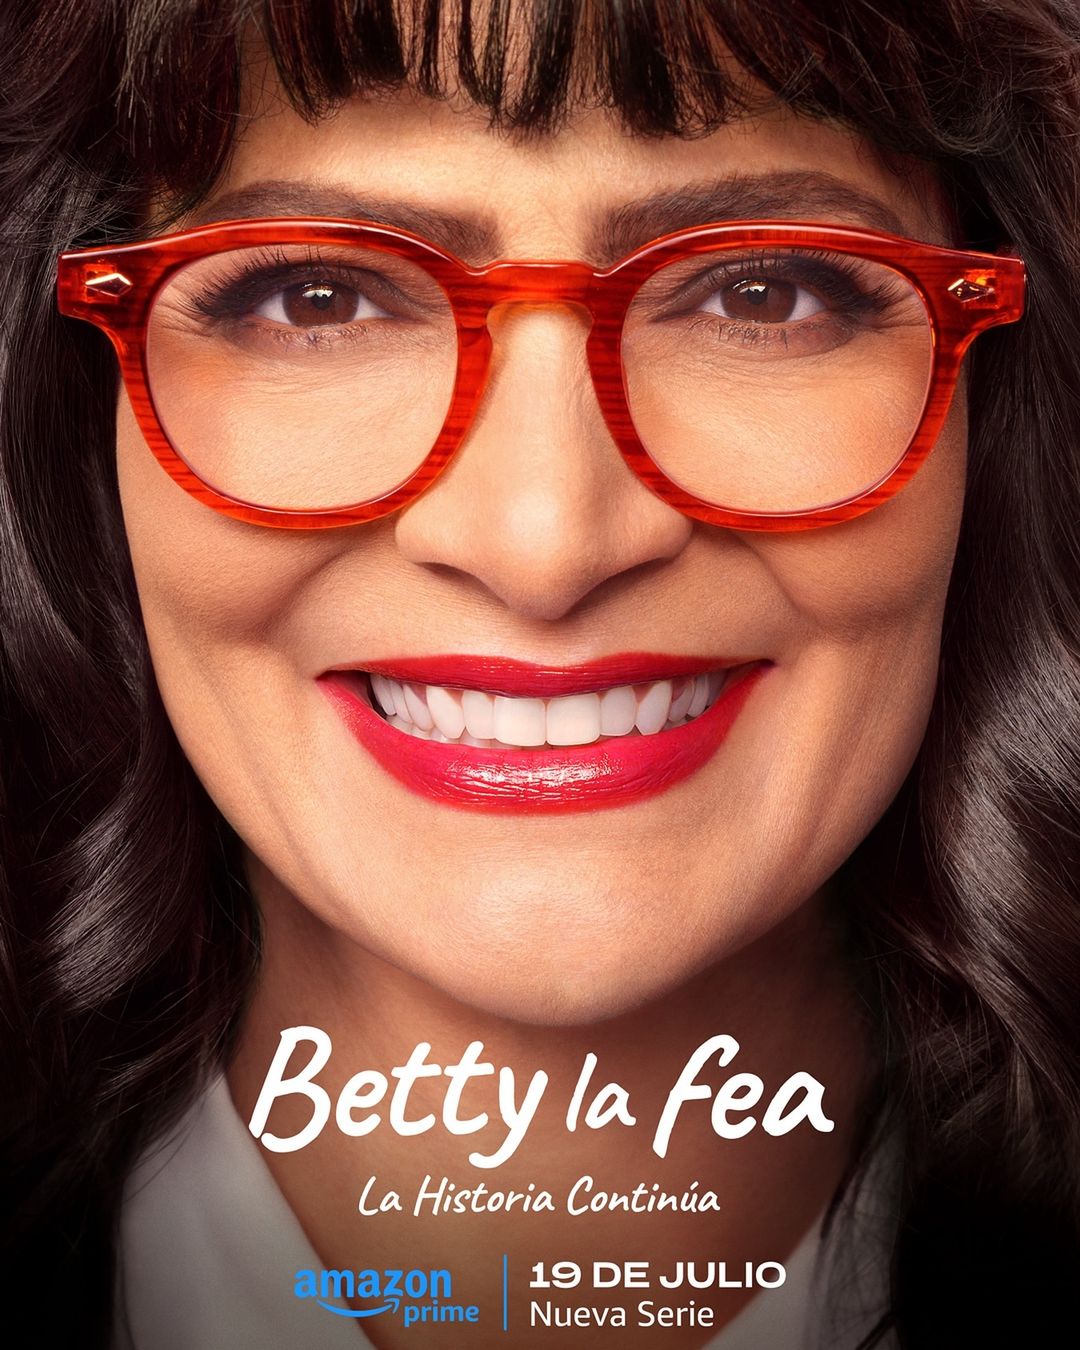 "Betty la fea" estrenará su secuela en julio 